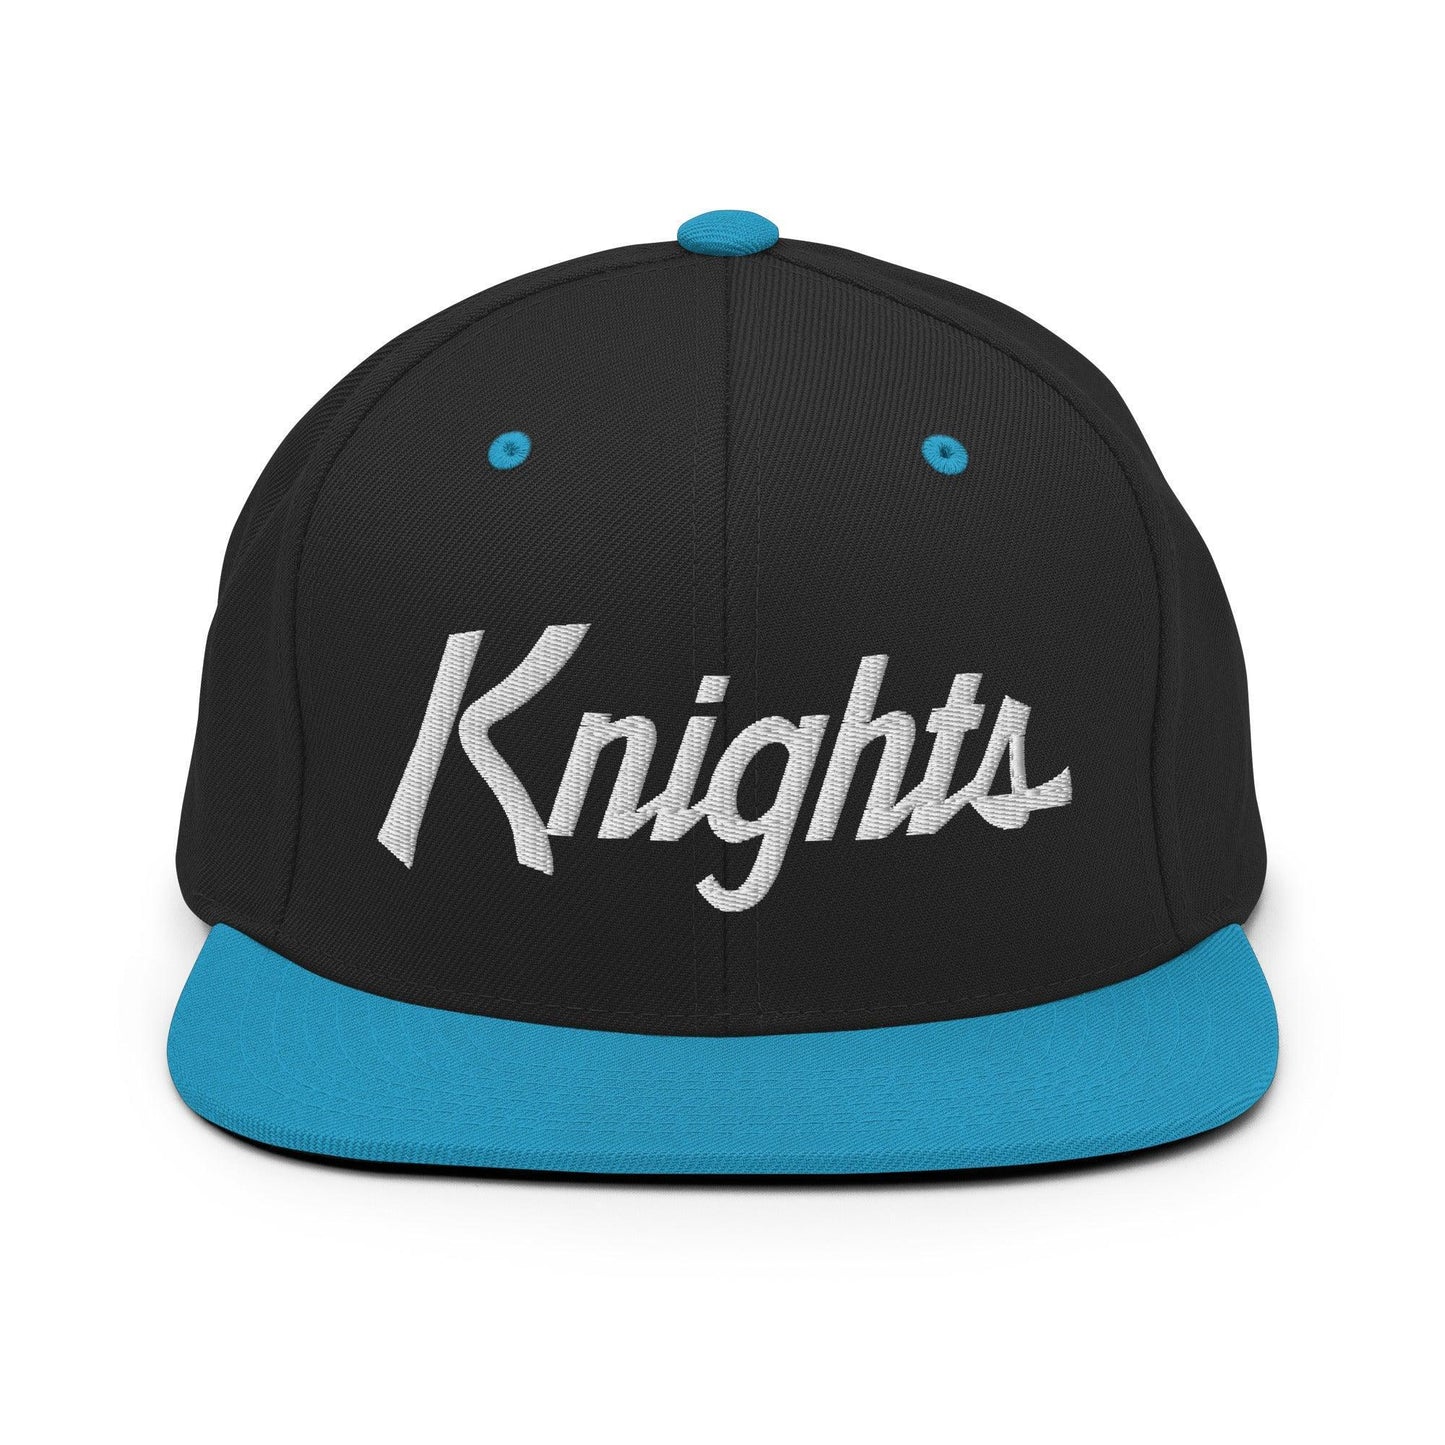 Knights School Mascot Script Snapback Hat Black Teal